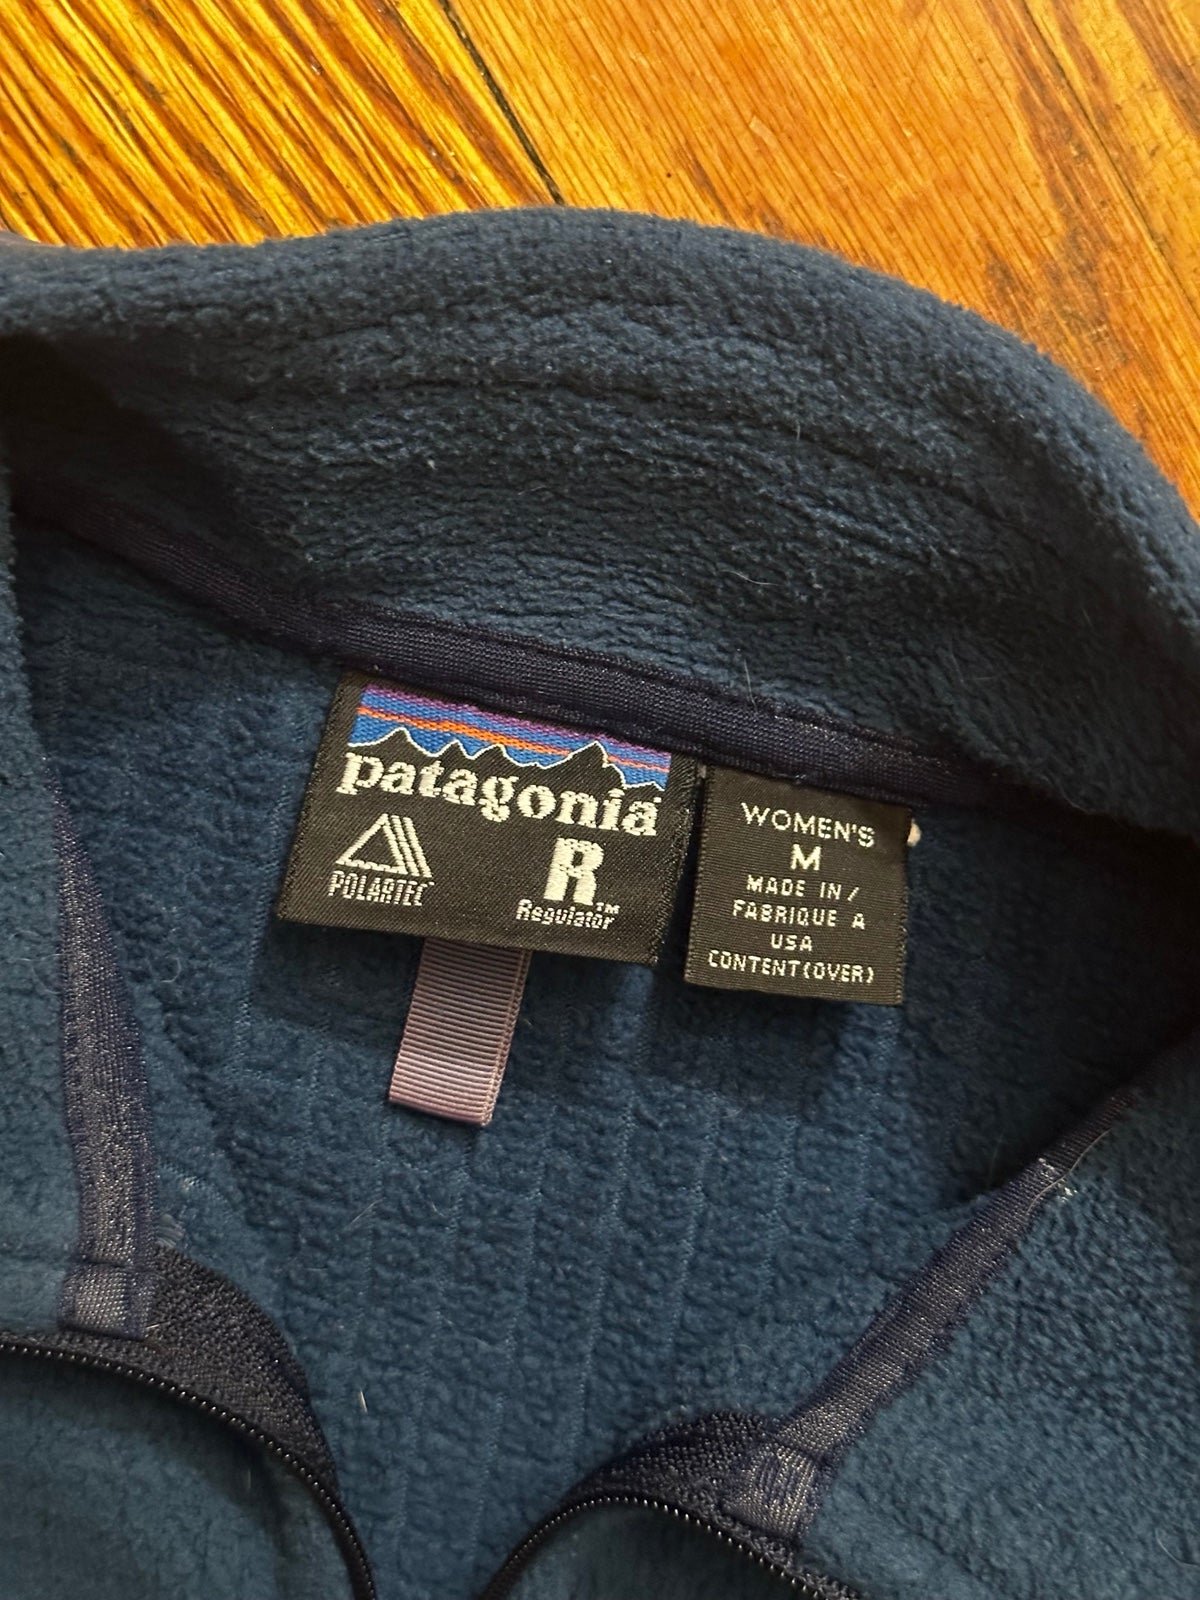 Classic Patagonia Fleece Polartec Vintage Regulator Series Zip Up Women’s JgdJe1Jhj best sale